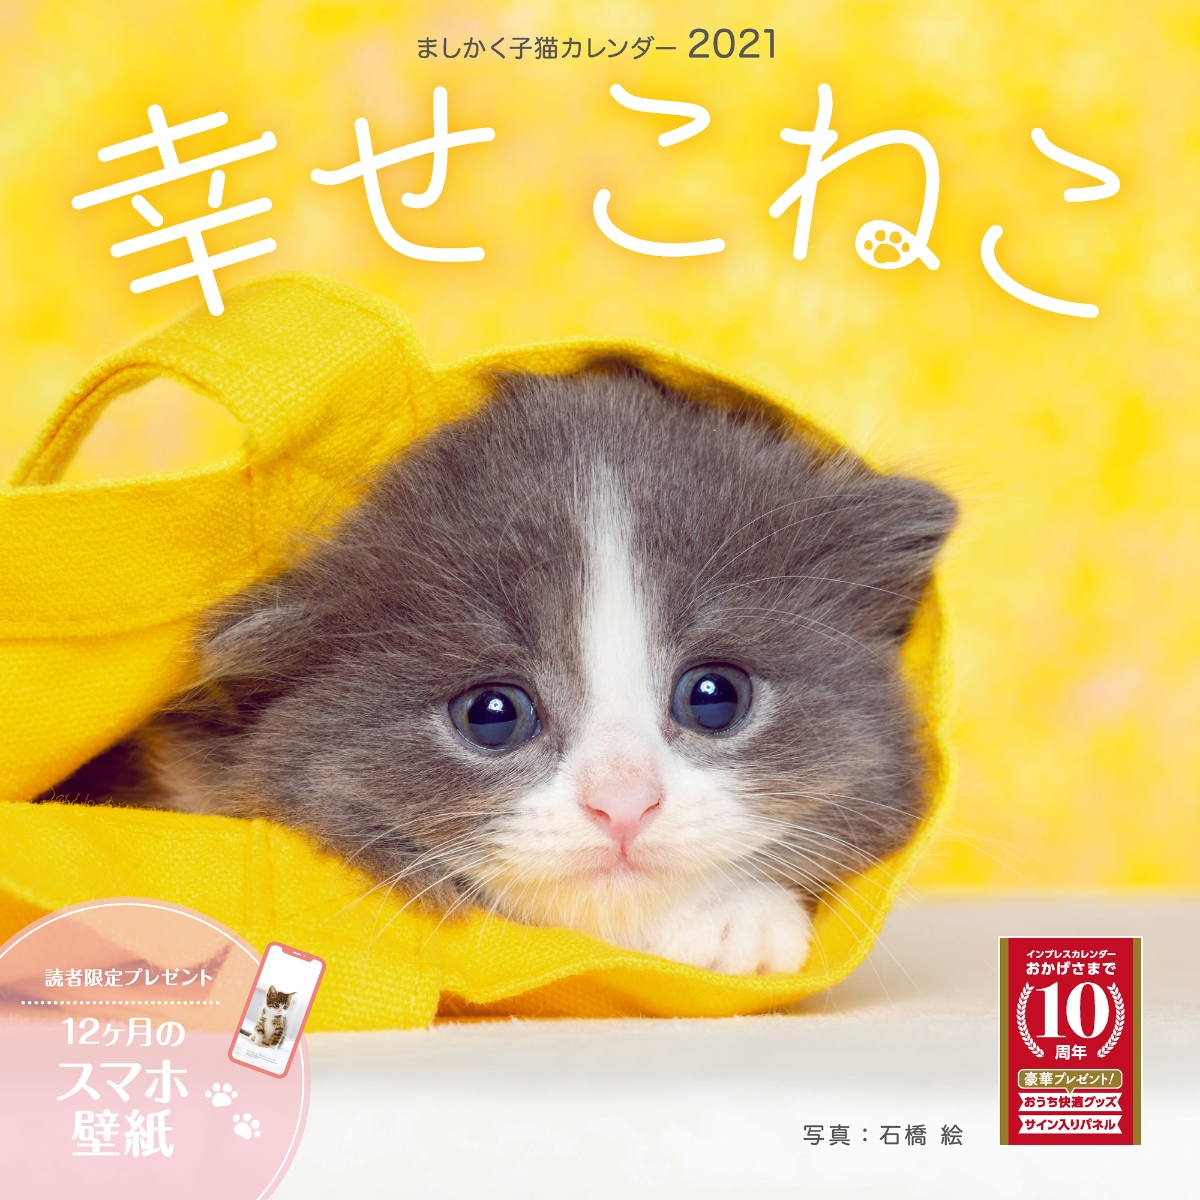 楽天ブックス ましかく子猫カレンダー 幸せこねこ 石橋 絵 本